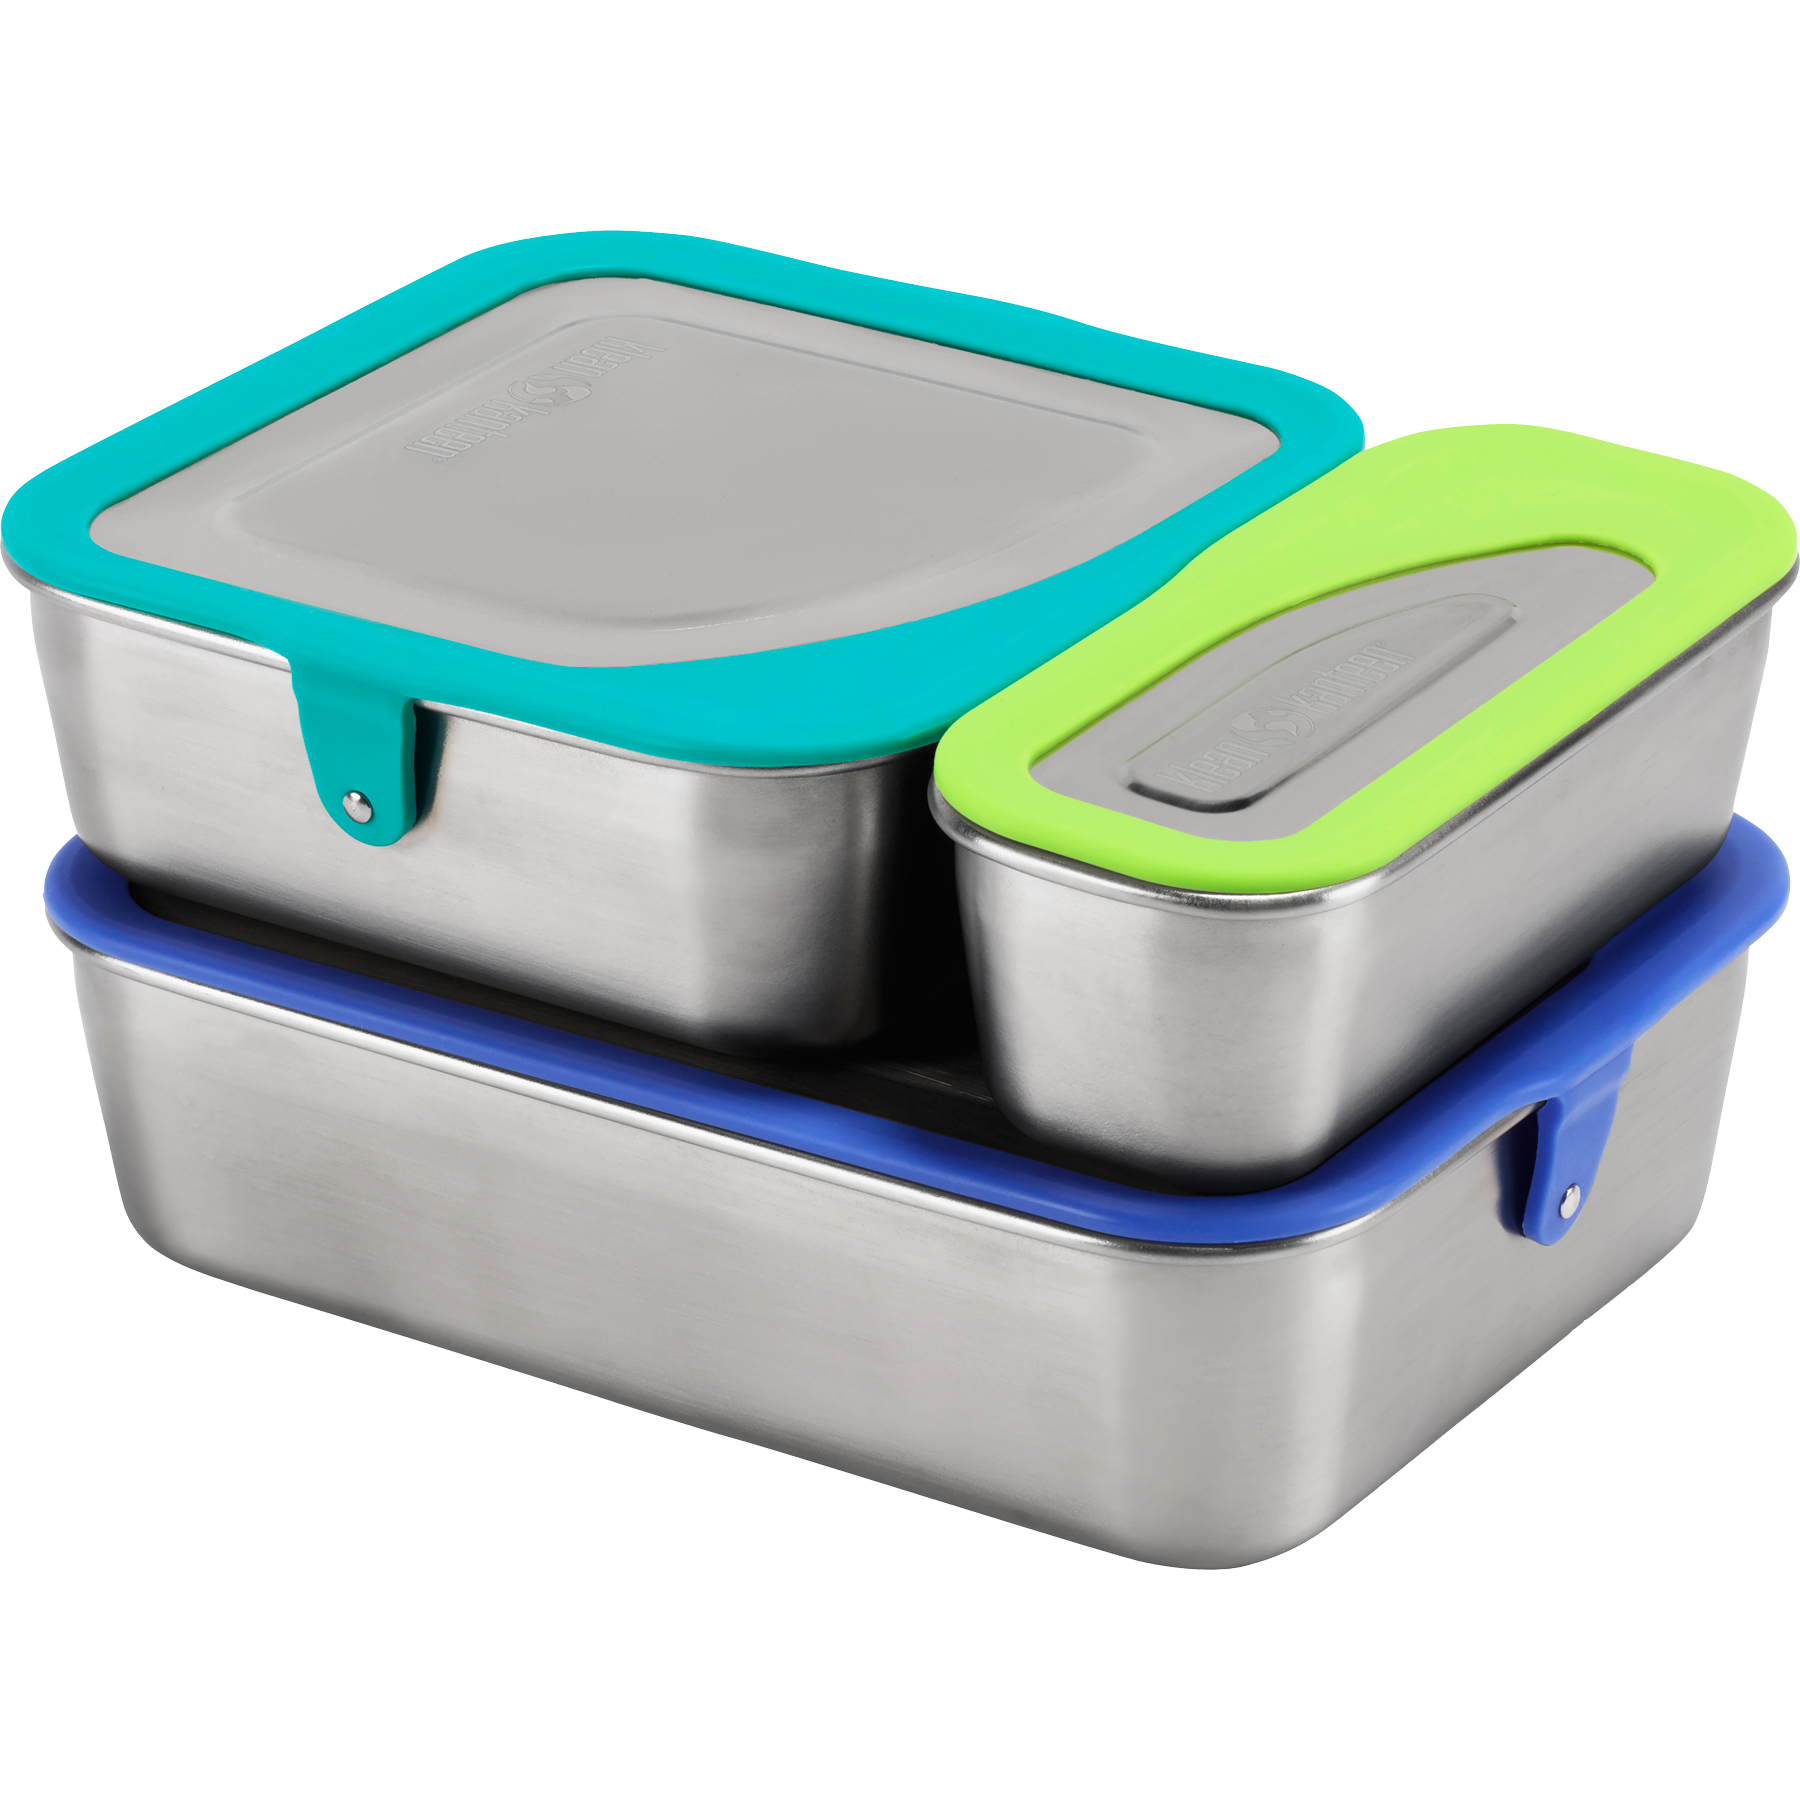 Productfoto van Klean Kanteen Complete set lunchboxen Set van 3